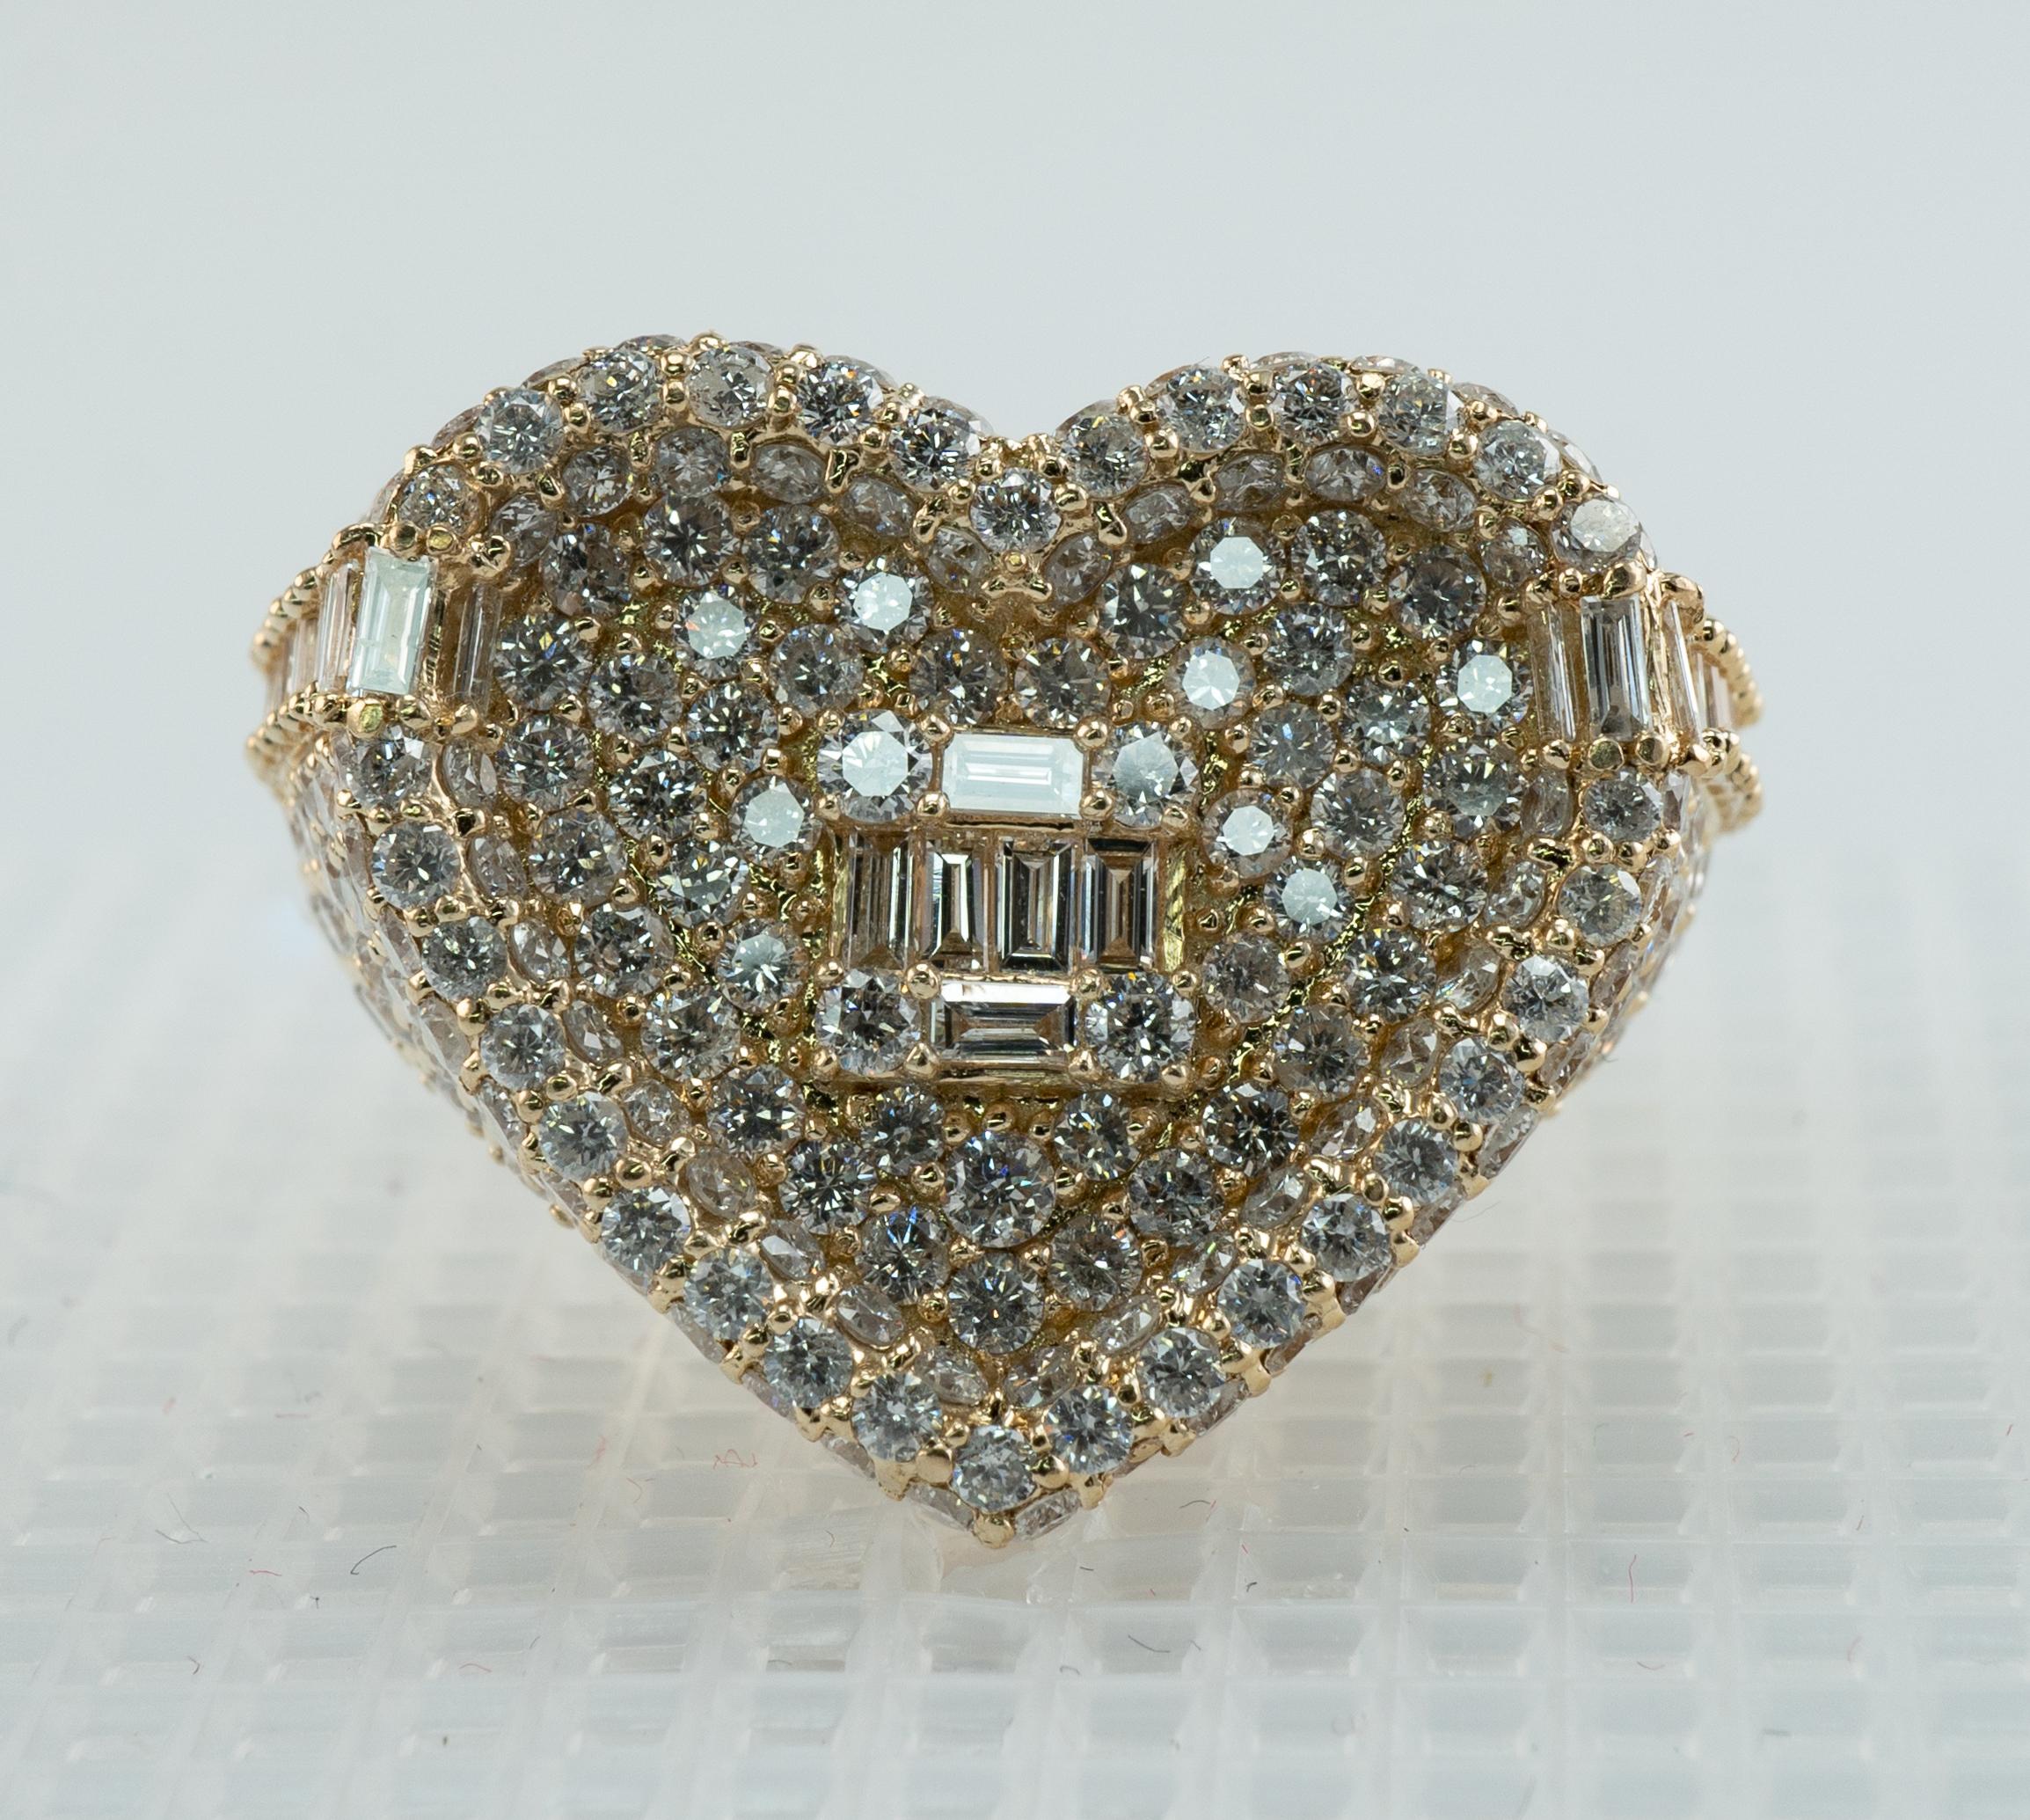 Dieser Ring ist in der Form eines Herzens gefertigt.
Der Ring ist mit 295 runden Diamanten und 26 Diamantbaguetten besetzt.
Die Diamanten haben die Reinheit SI1-SI2 und die Farbe H.
Das Gesamtgewicht der Diamanten in diesem Ring beträgt etwa 3,74